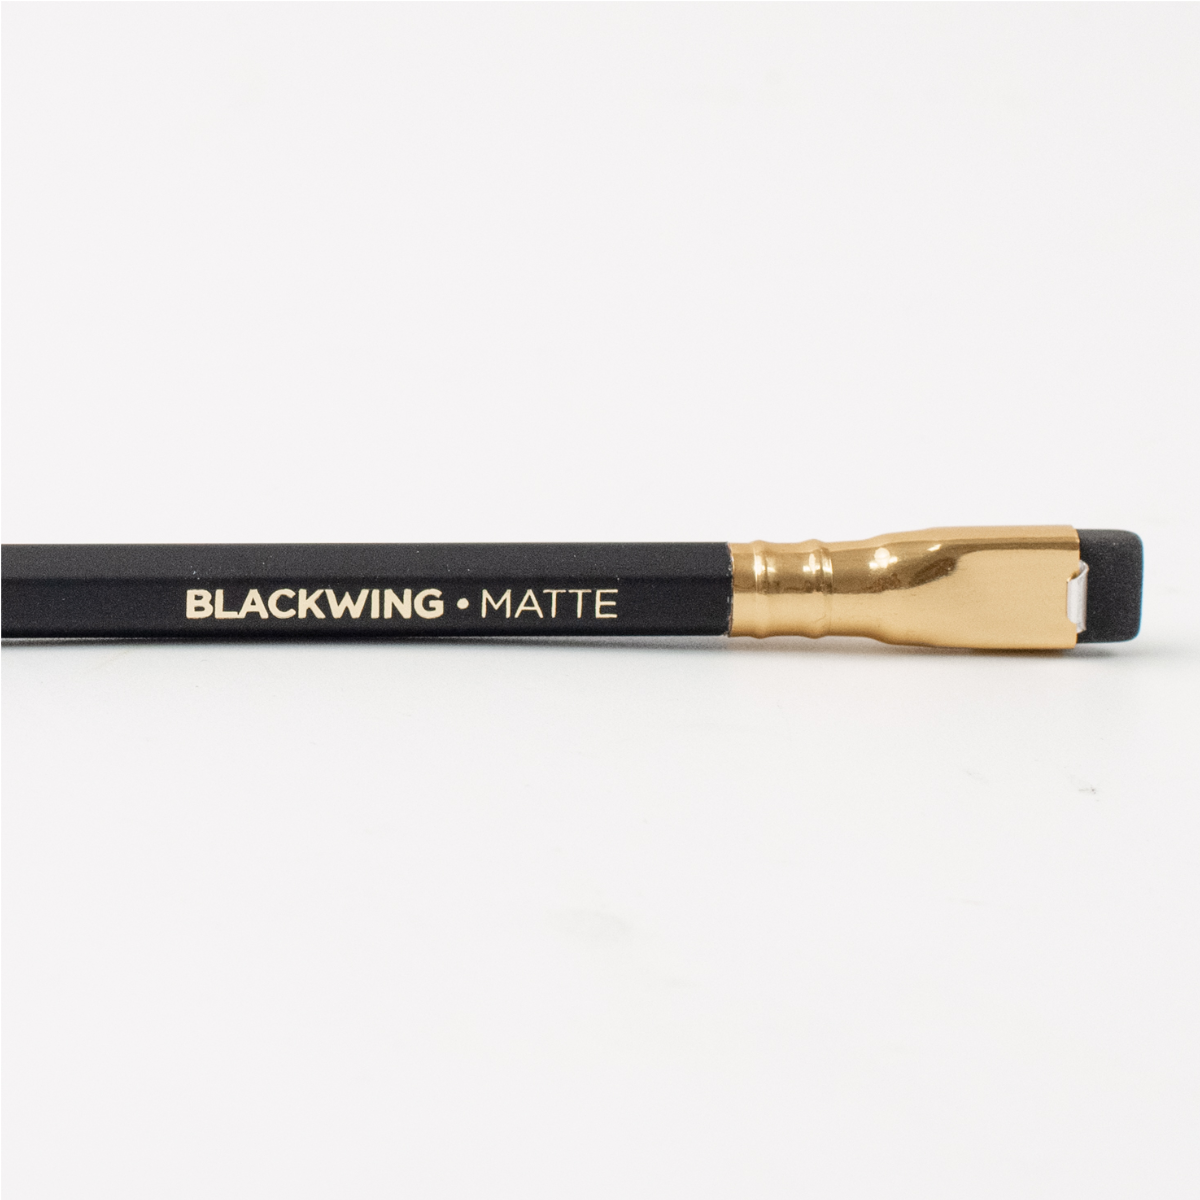 Blackwing Matte